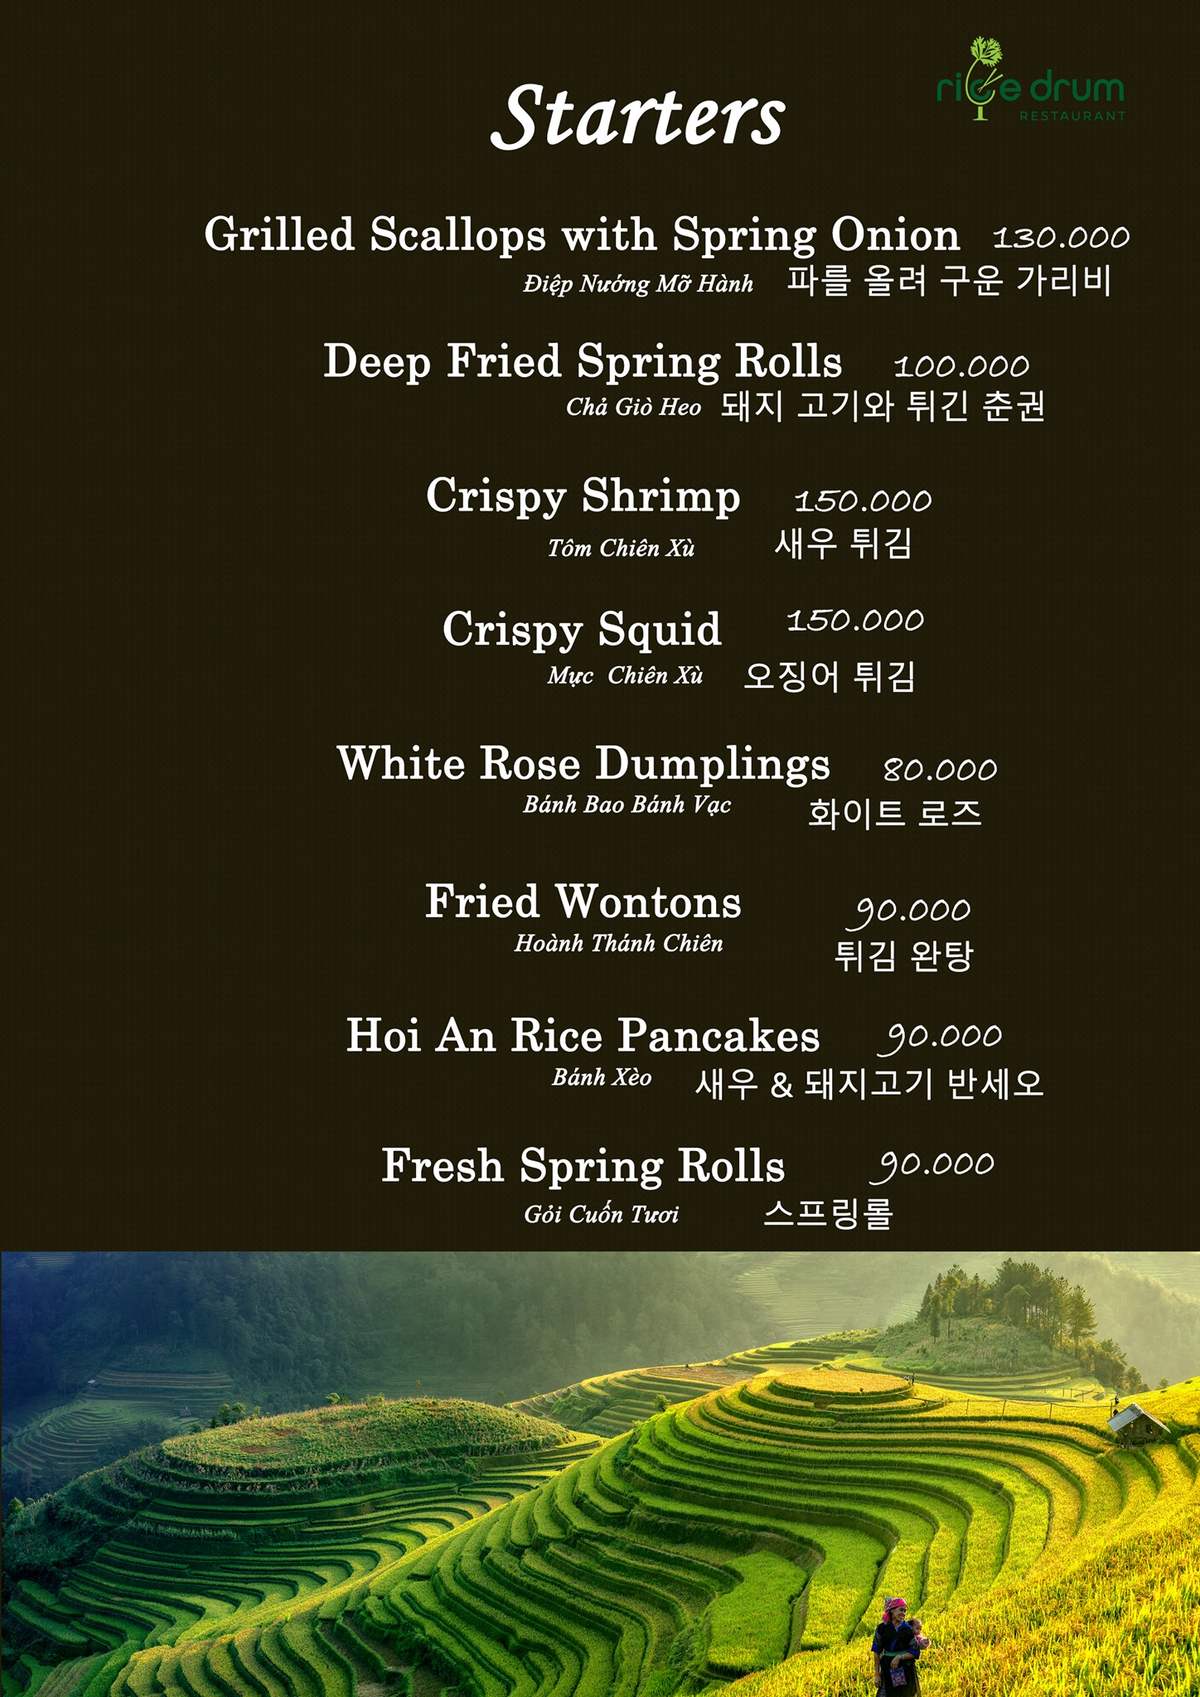 Rice Drum Restaurant Hoi An - Steak house cao cấp phục vụ món bò tơ chất lượng nhất Hội An 10